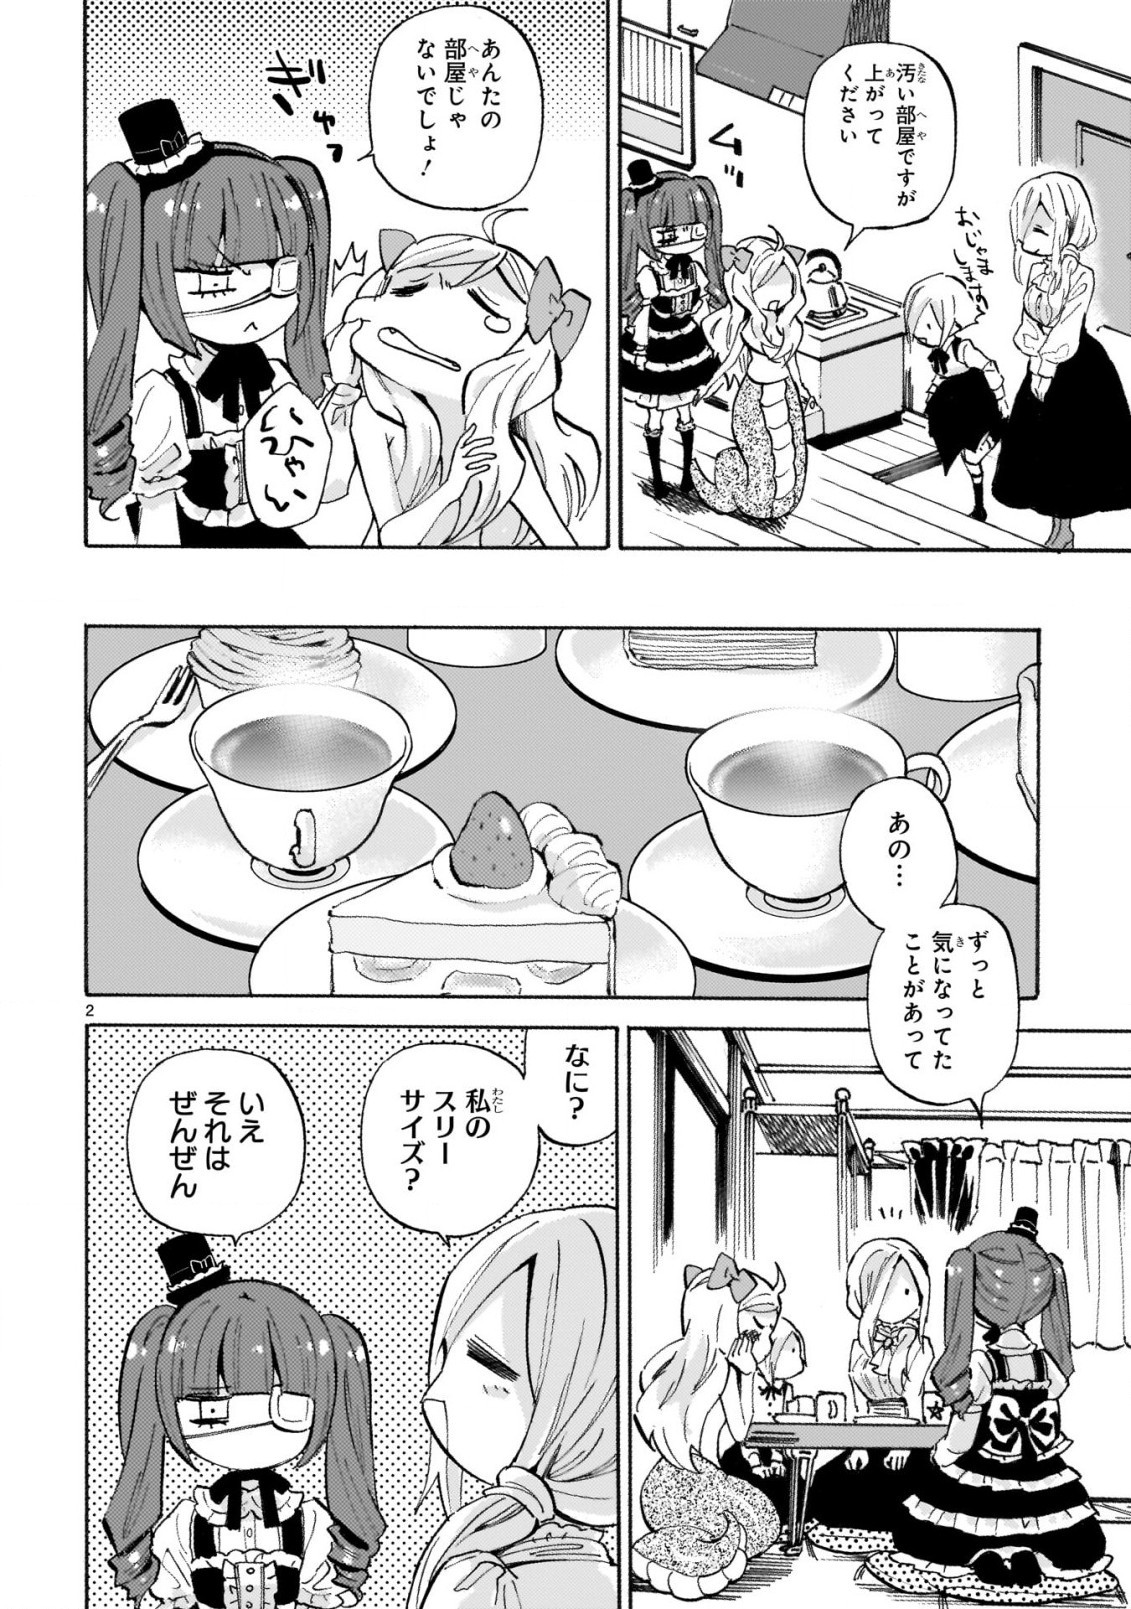 Jashin-chan Dropkick - Chapter 242 - Page 2